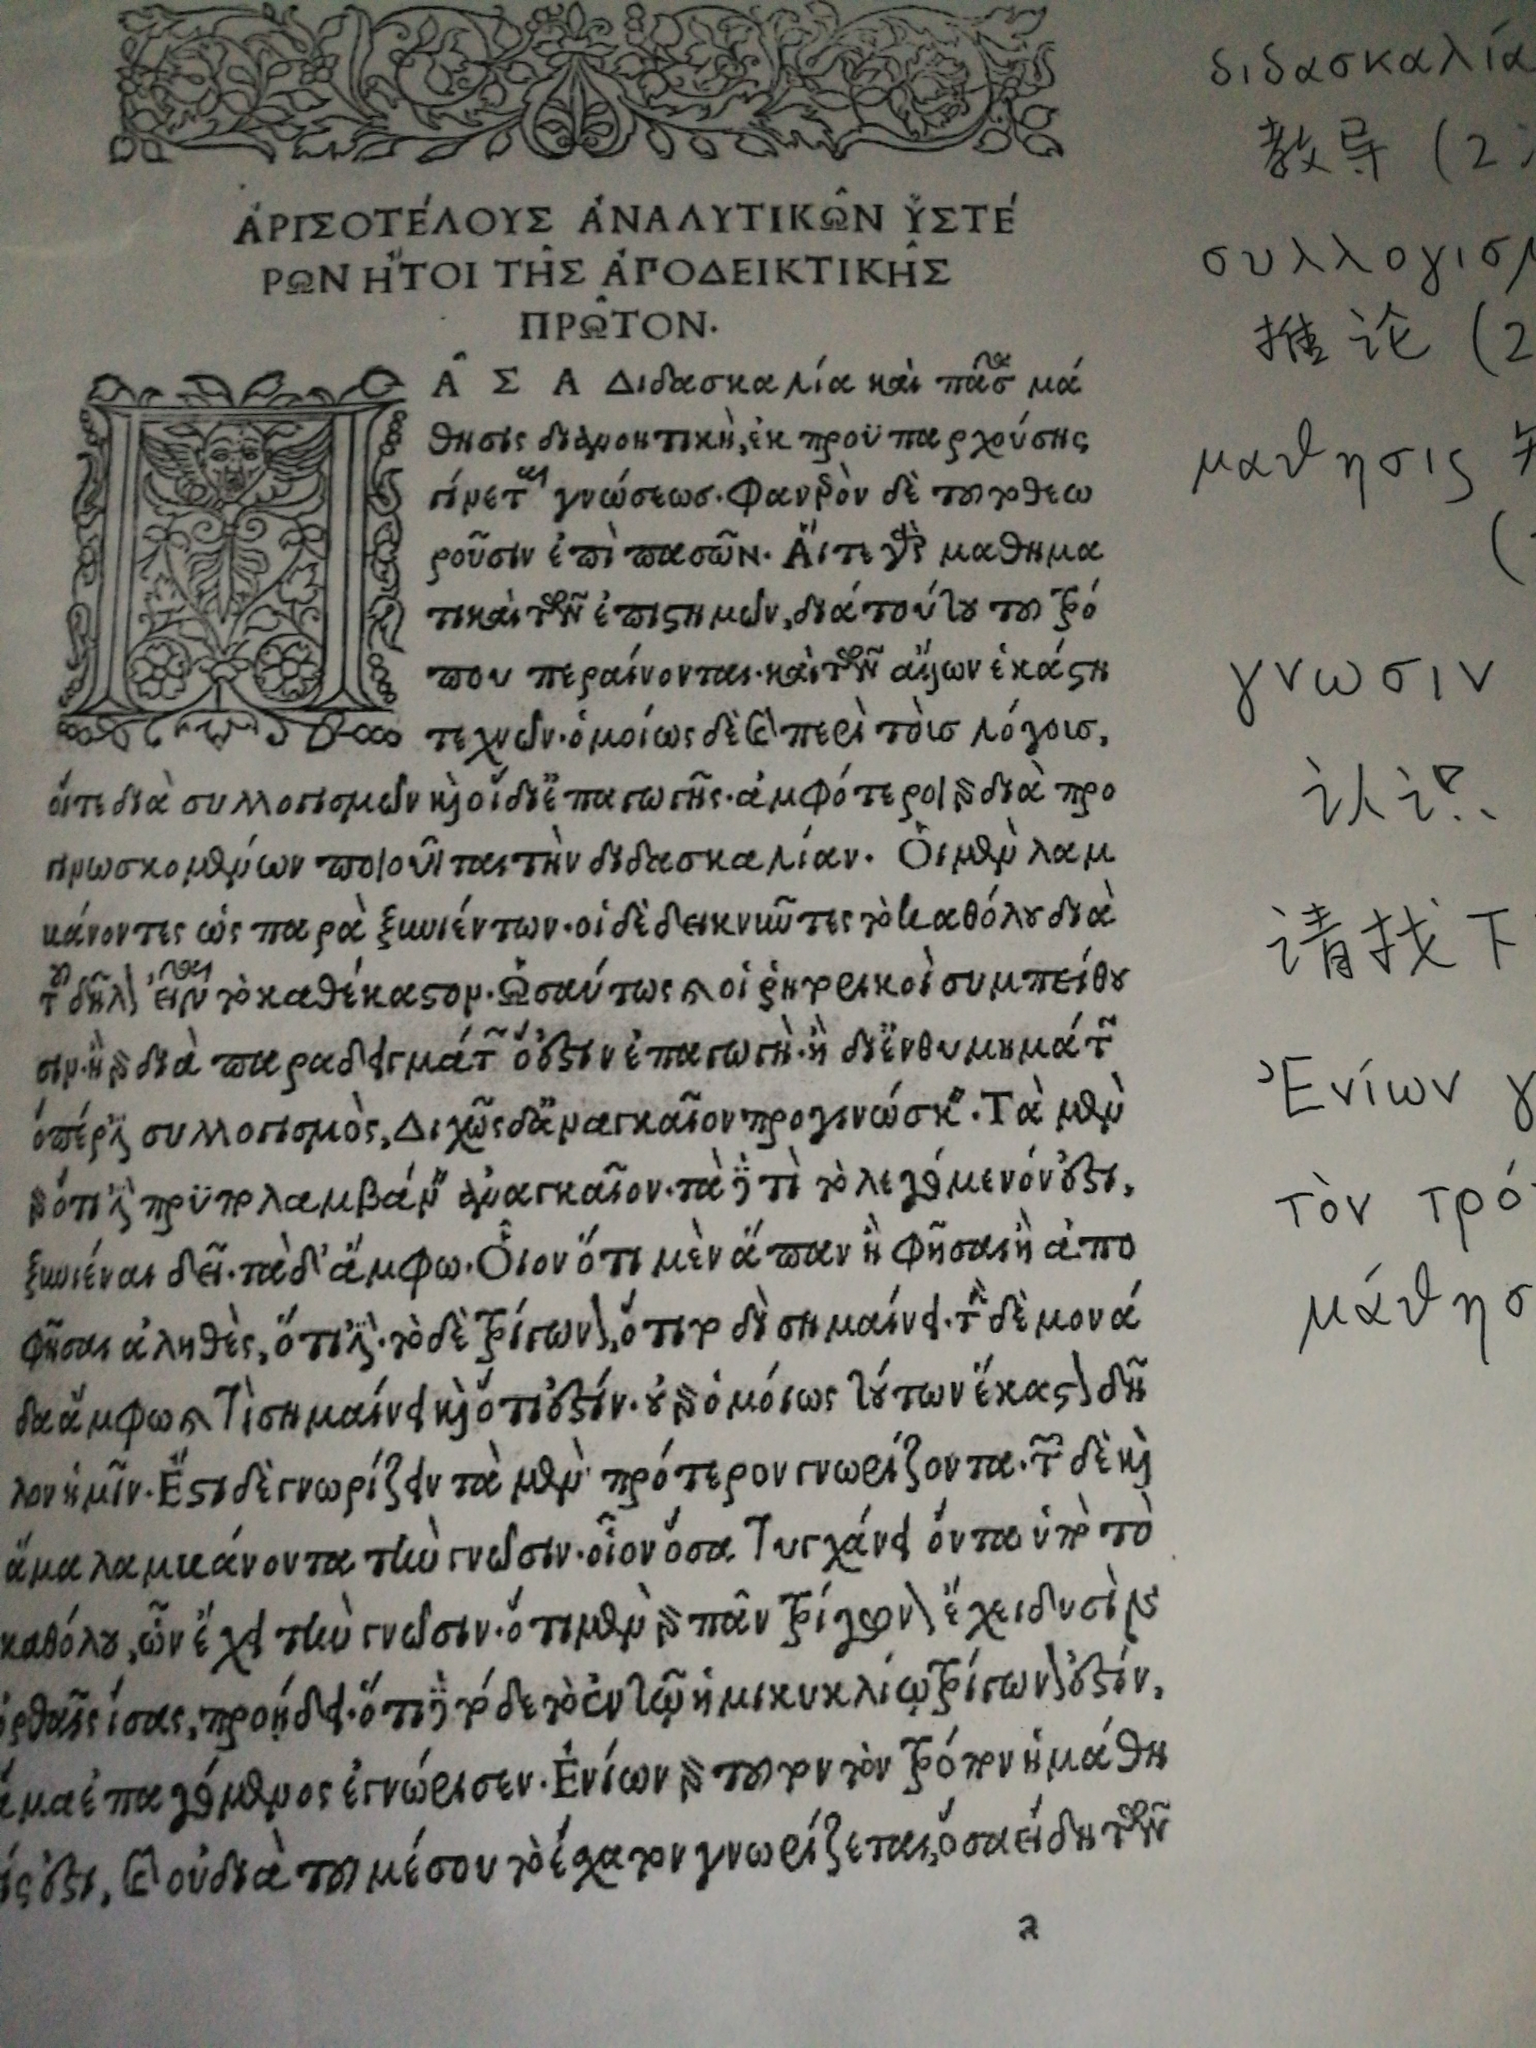 中世纪拜占庭帝国的希腊语和古典时代的希腊语书写是否一样? 